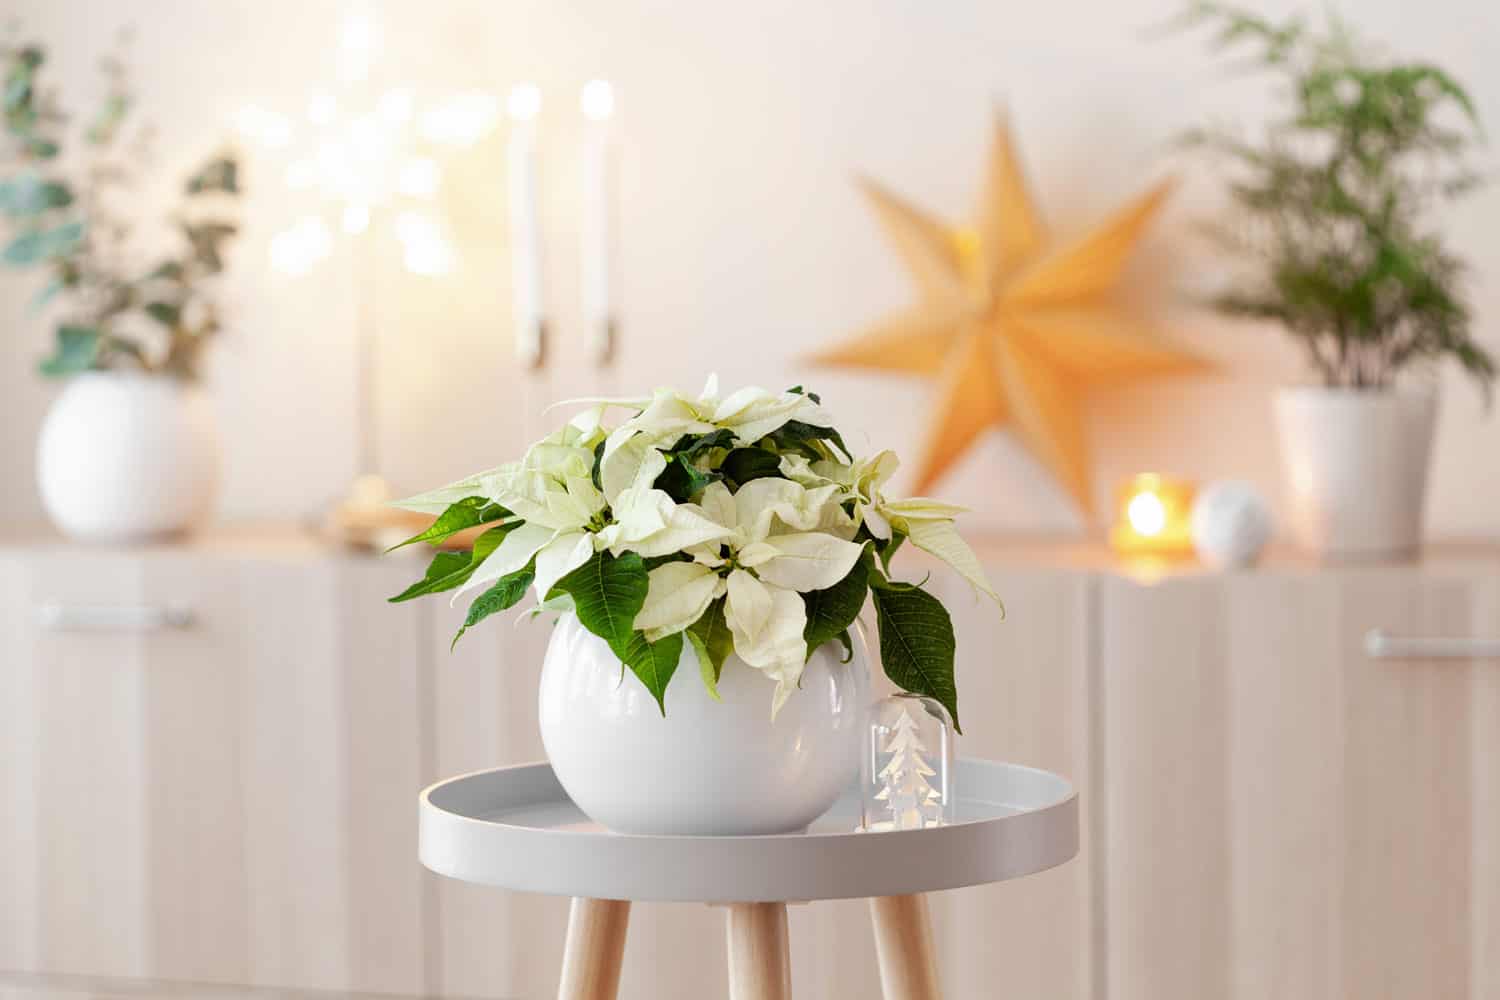 Bright white poinsettia on a white bowl